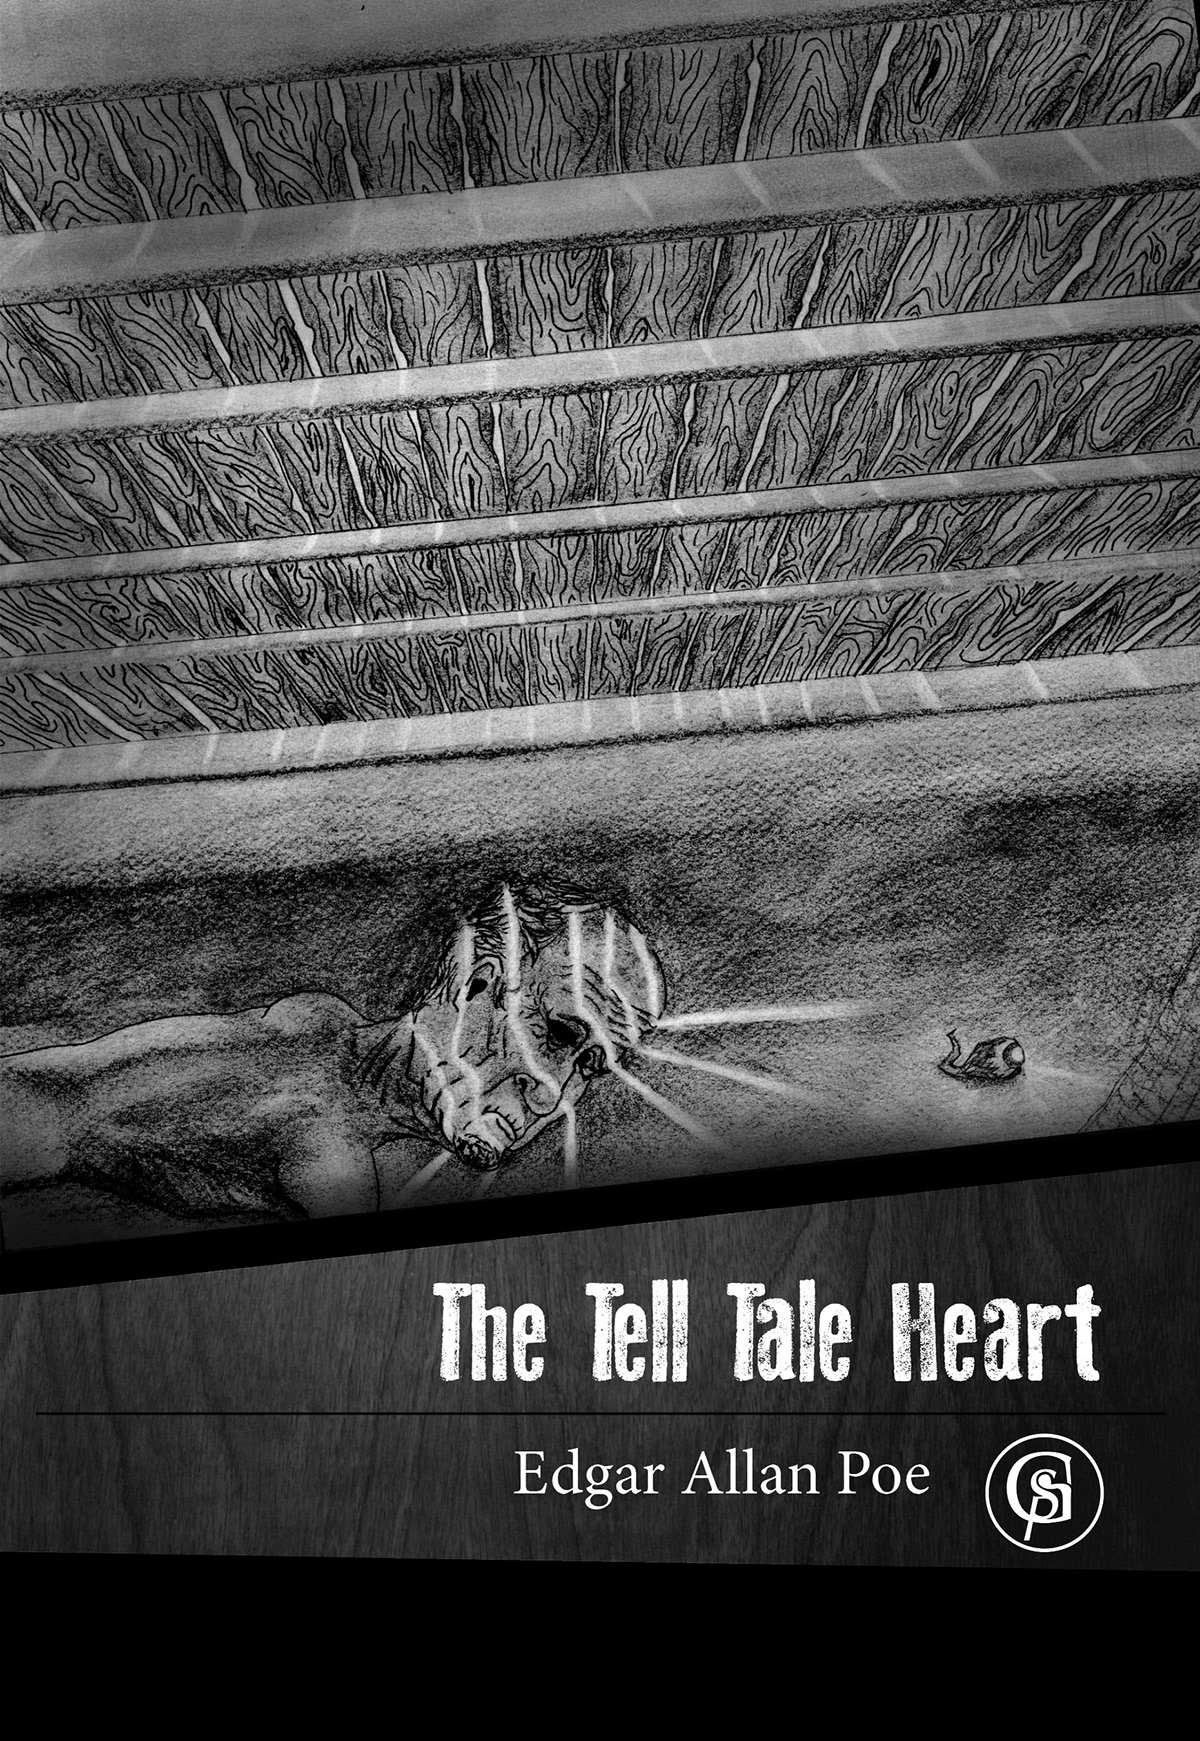 book cover Tell tale heart Edgar allan Poe